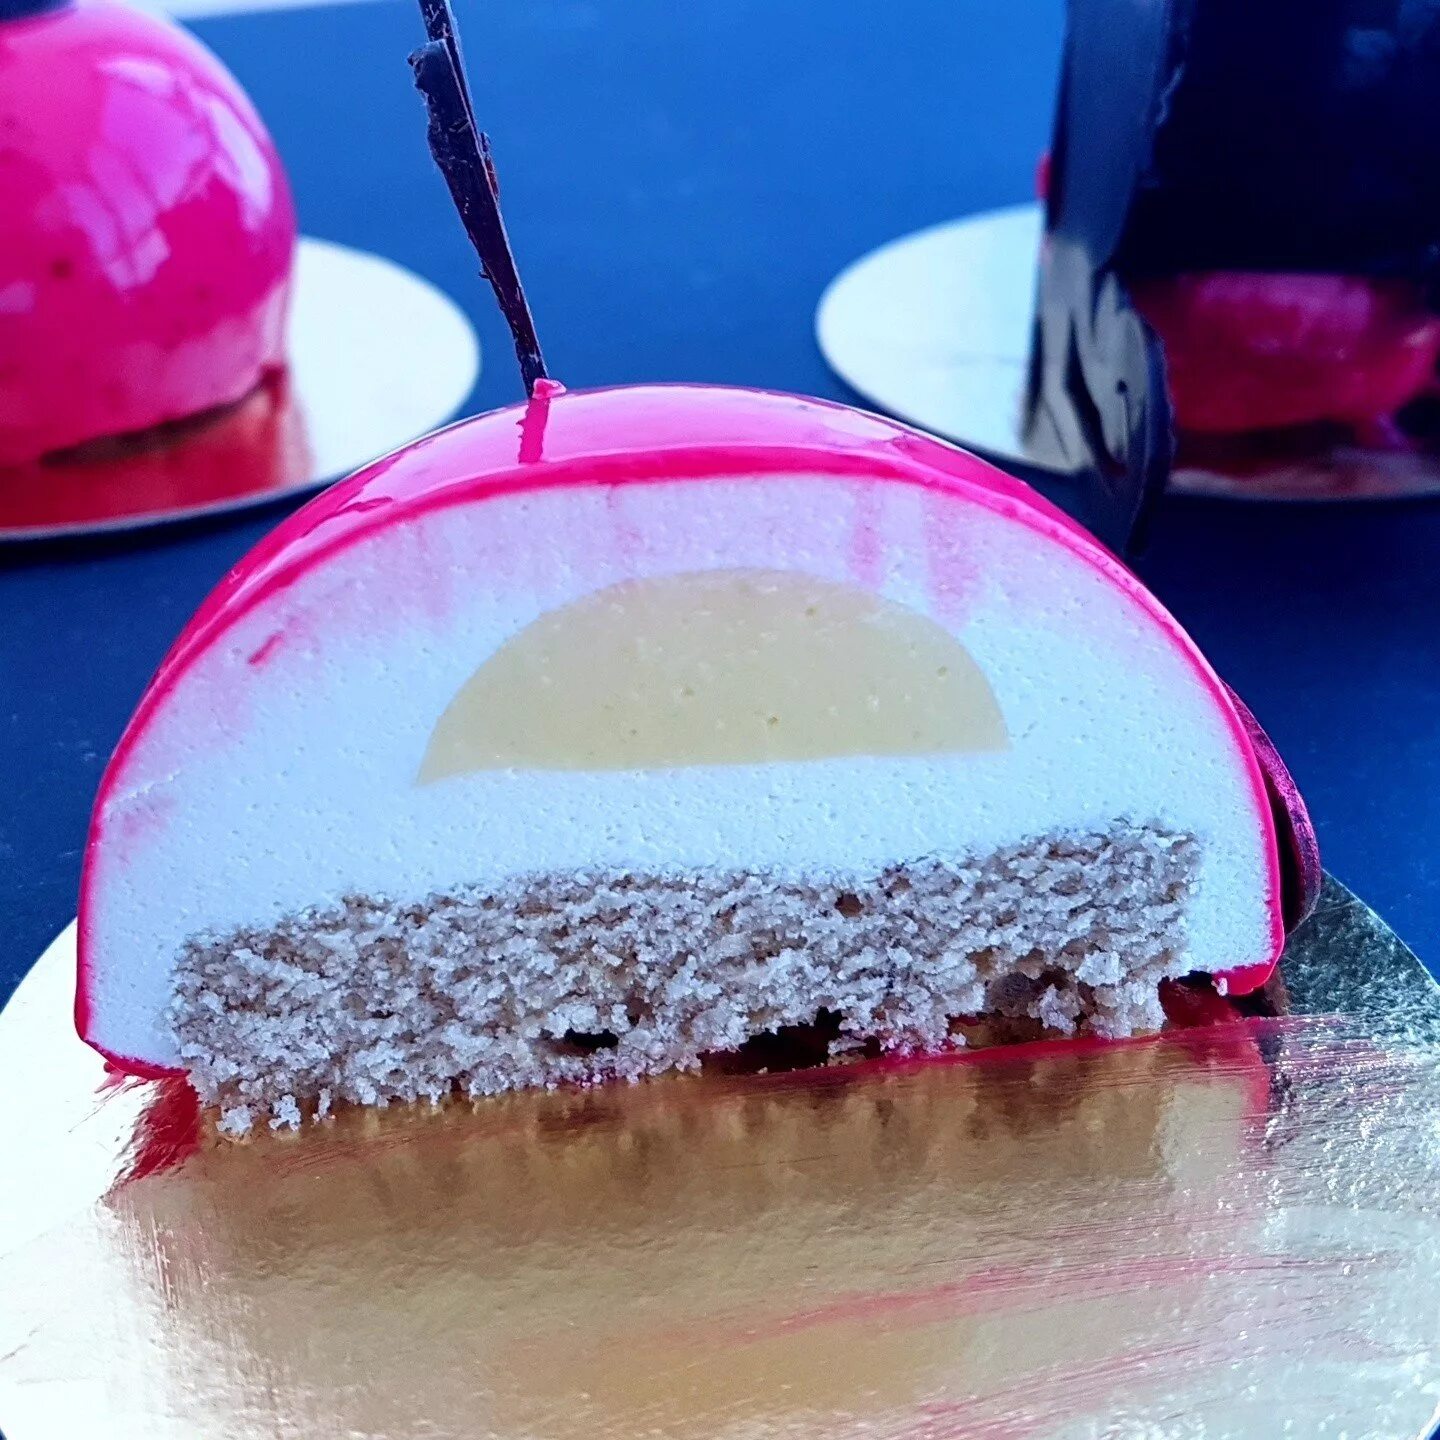 Муссовое пирожное "Тиффани". Муссовый торт Эклипс. Муссовый космос зеркальная глазурь. Муссовое пирожное с зеркальной глазурью.